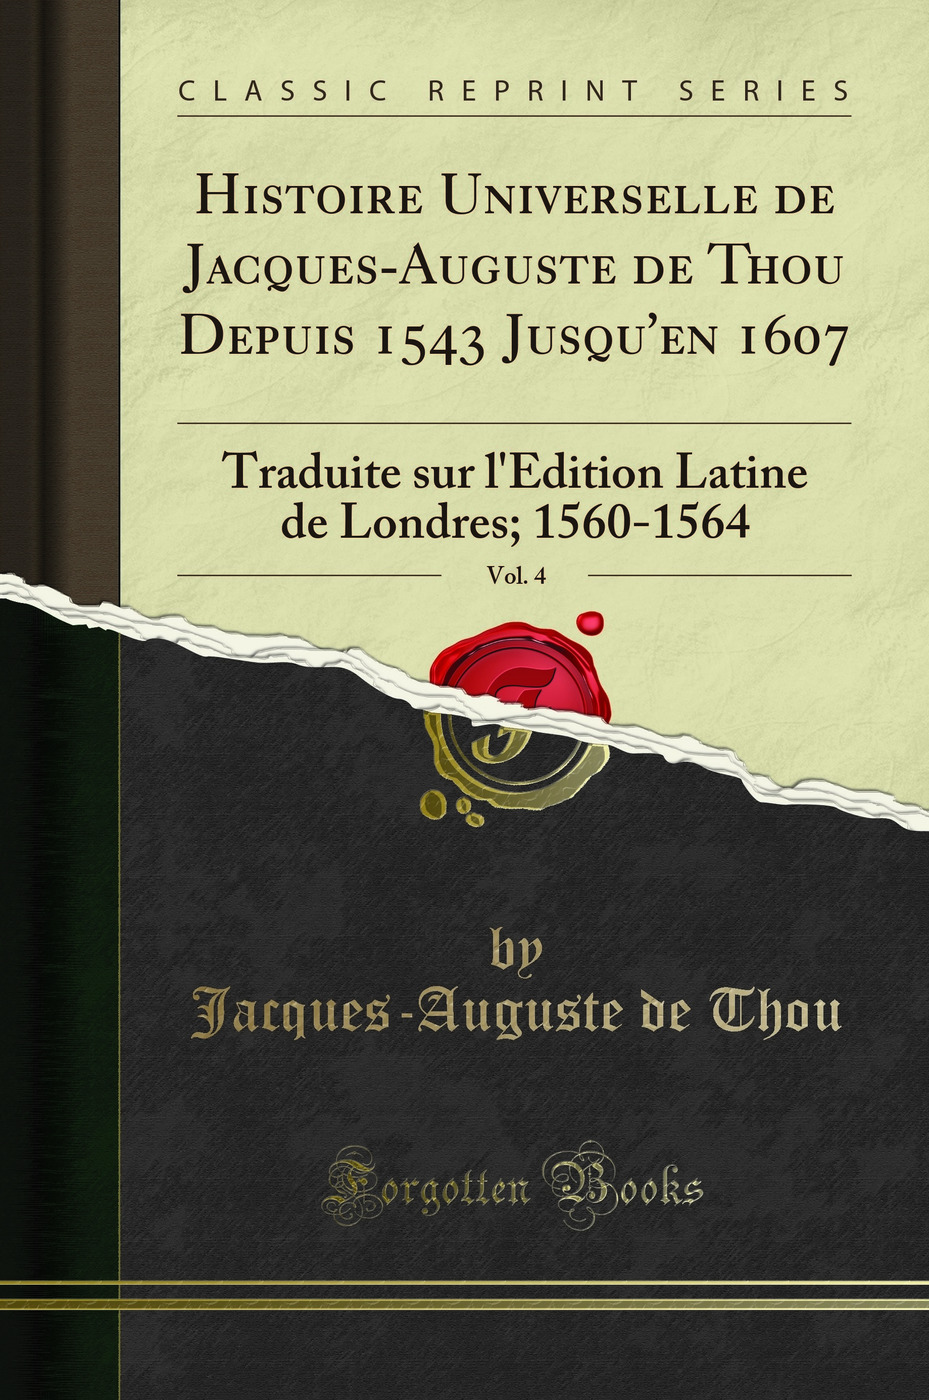 Histoire Universelle de Jacques-Auguste de Thou Depuis 1543 Jusqu'en 1607, Vol - Jacques-Auguste de Thou